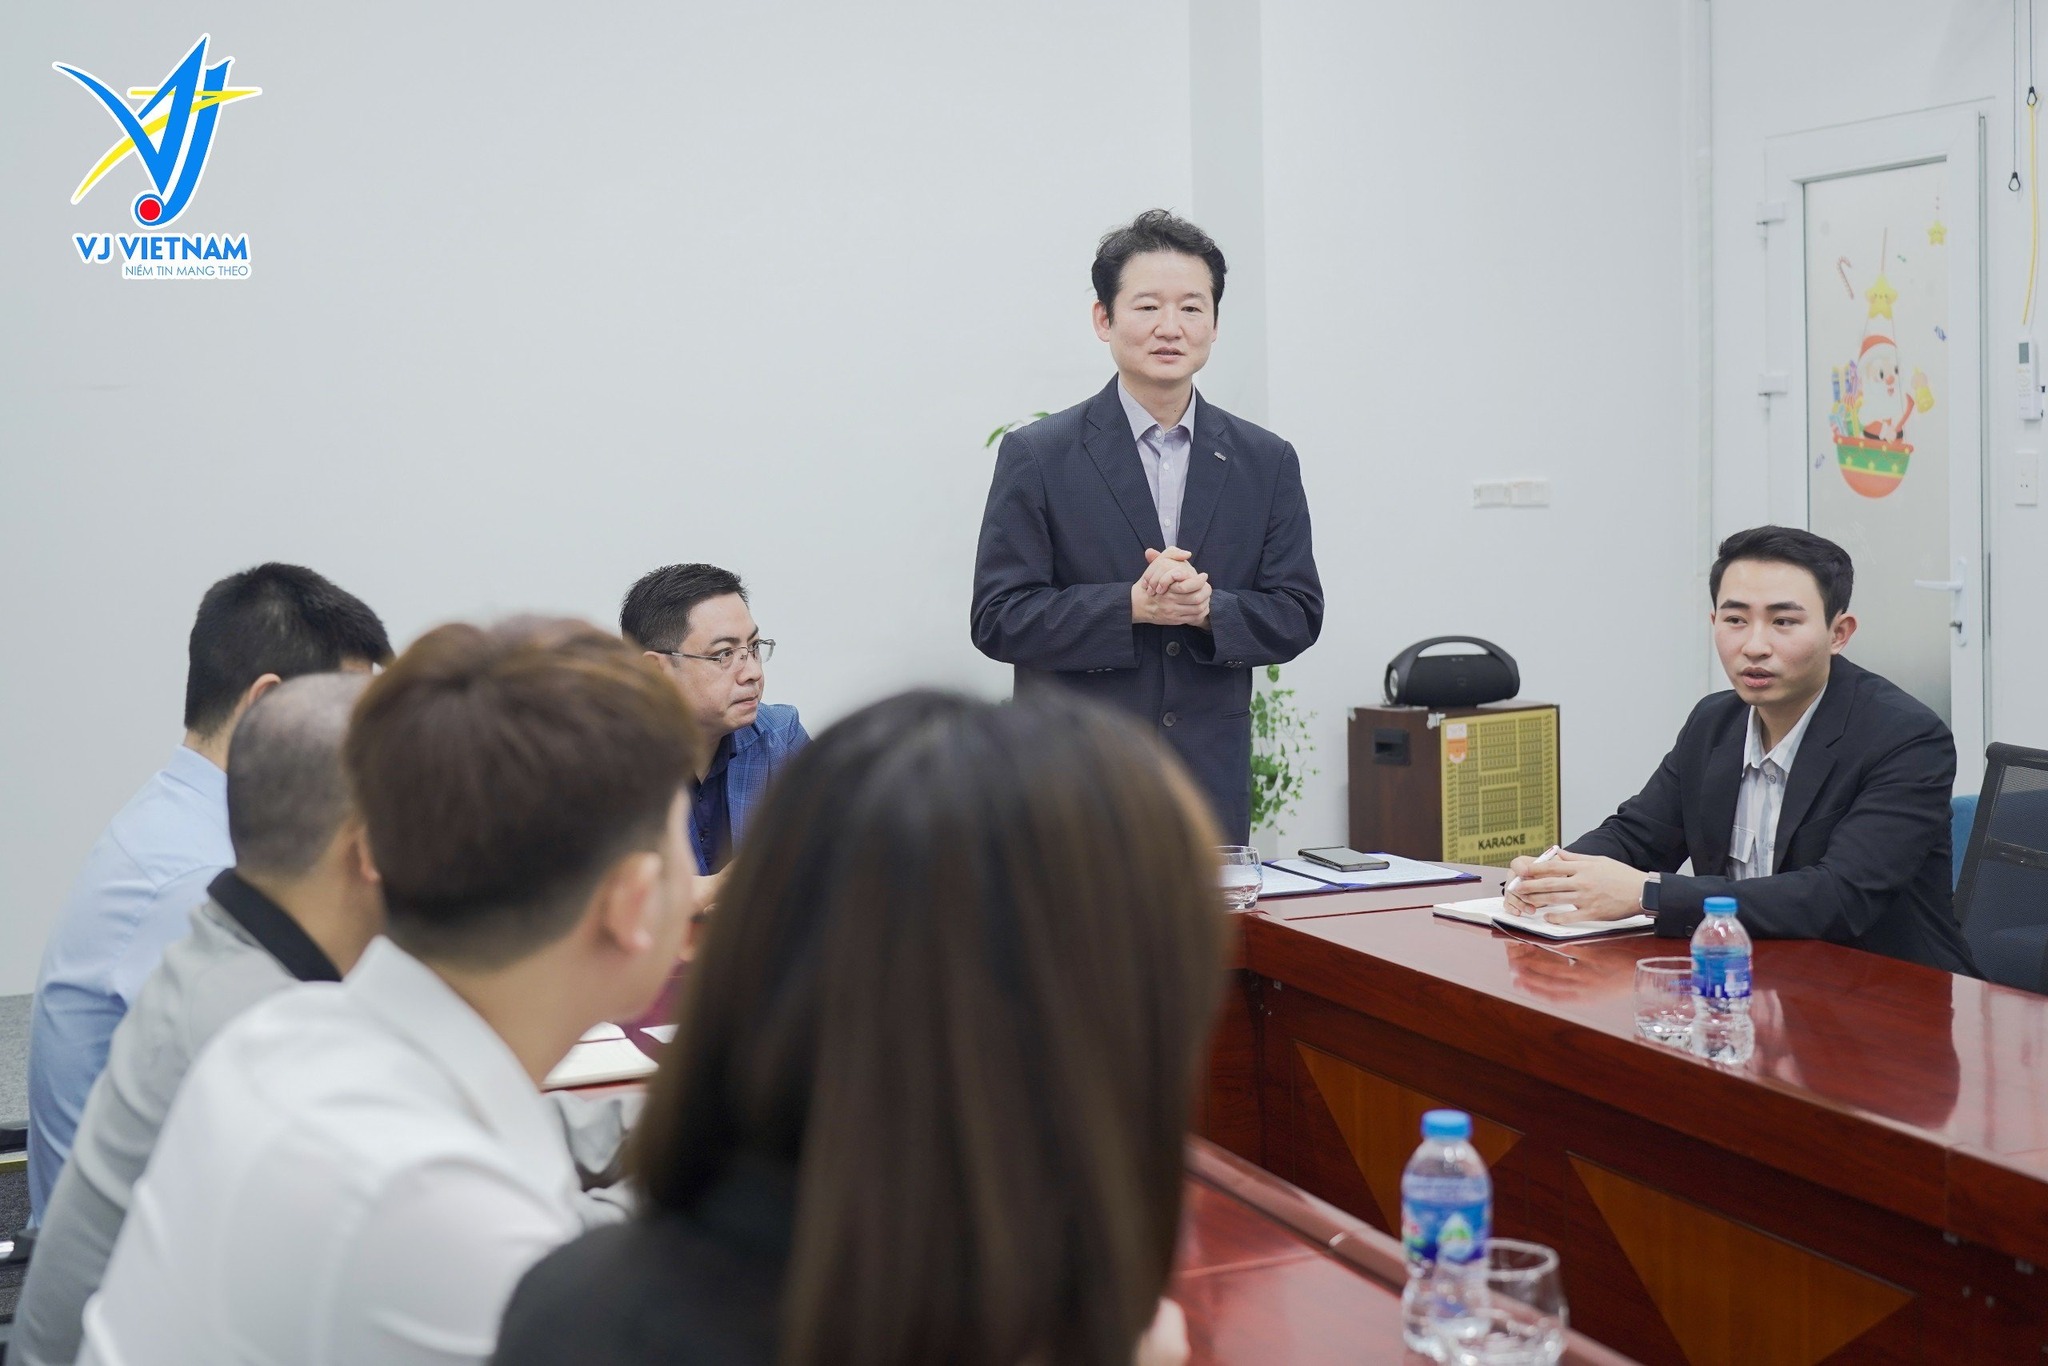 VJ Việt Nam ký kết MOU với đại học khoa học và sức khỏe Chungbuk